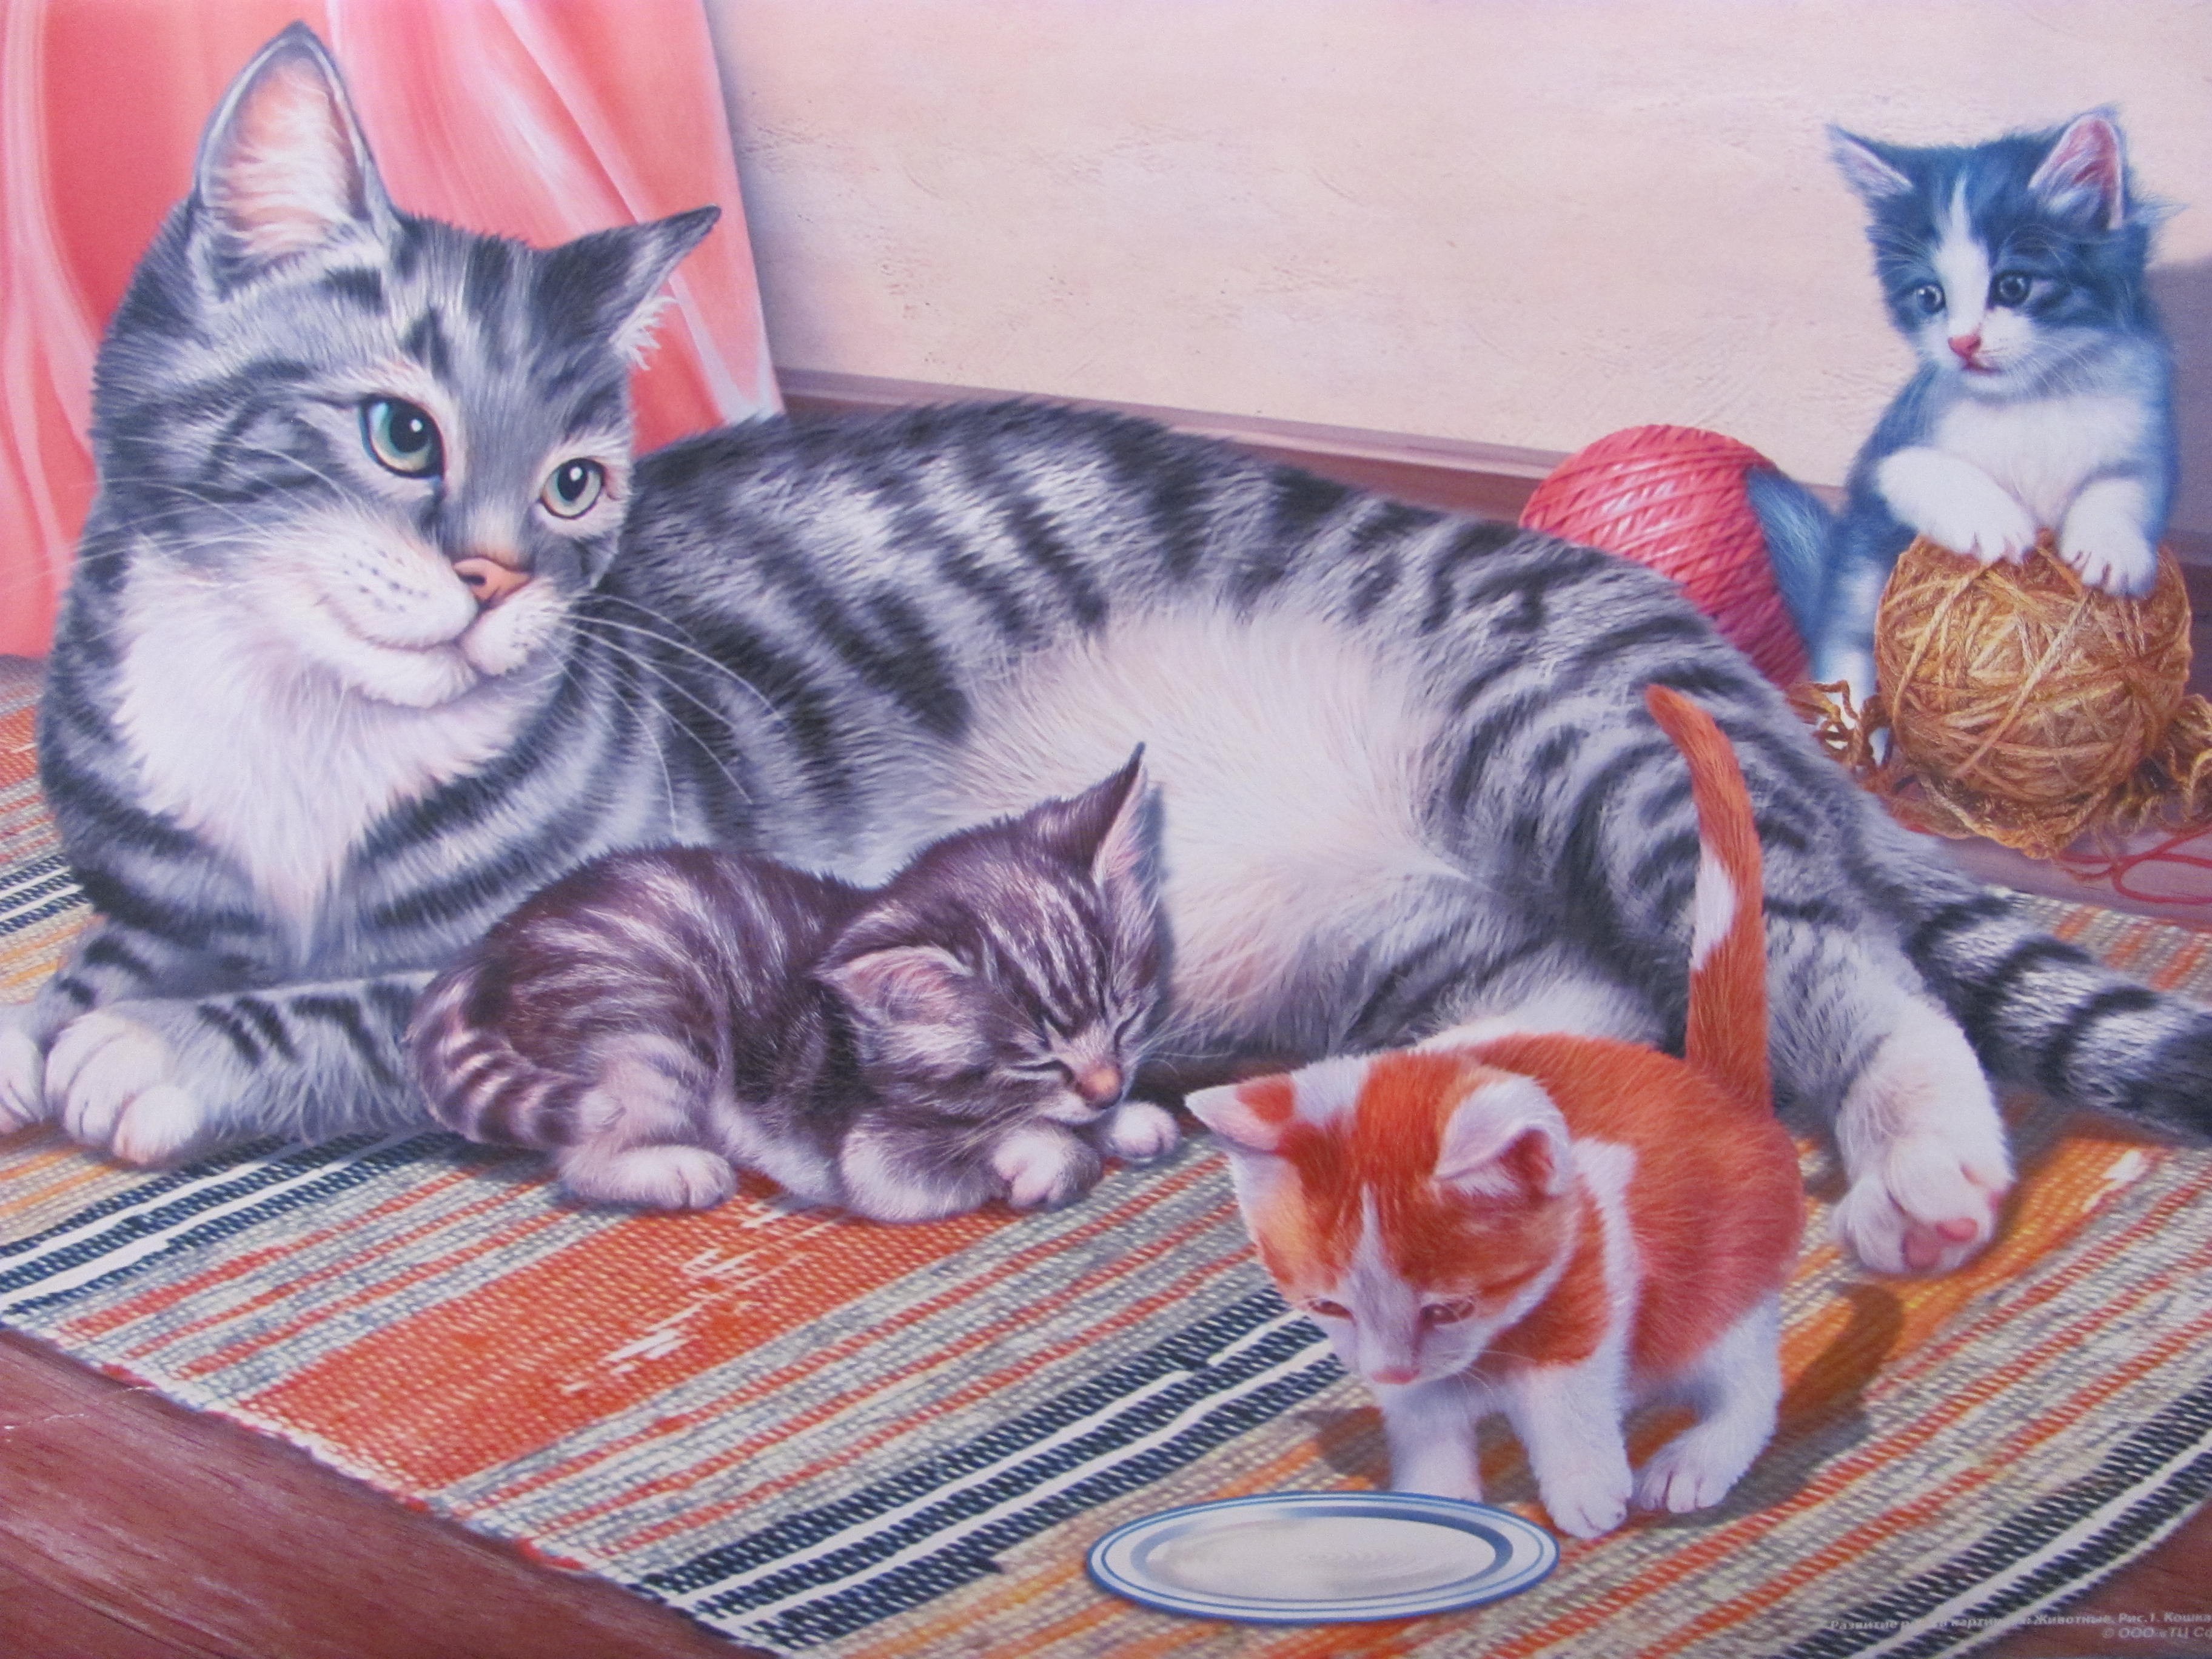 Picture me cats. Картина кошка с котятами Автор с Веретенникова. Кошка и котенок для детей. Картина для детей кошка с котятами. Сюжетная картина кошка с котятами.